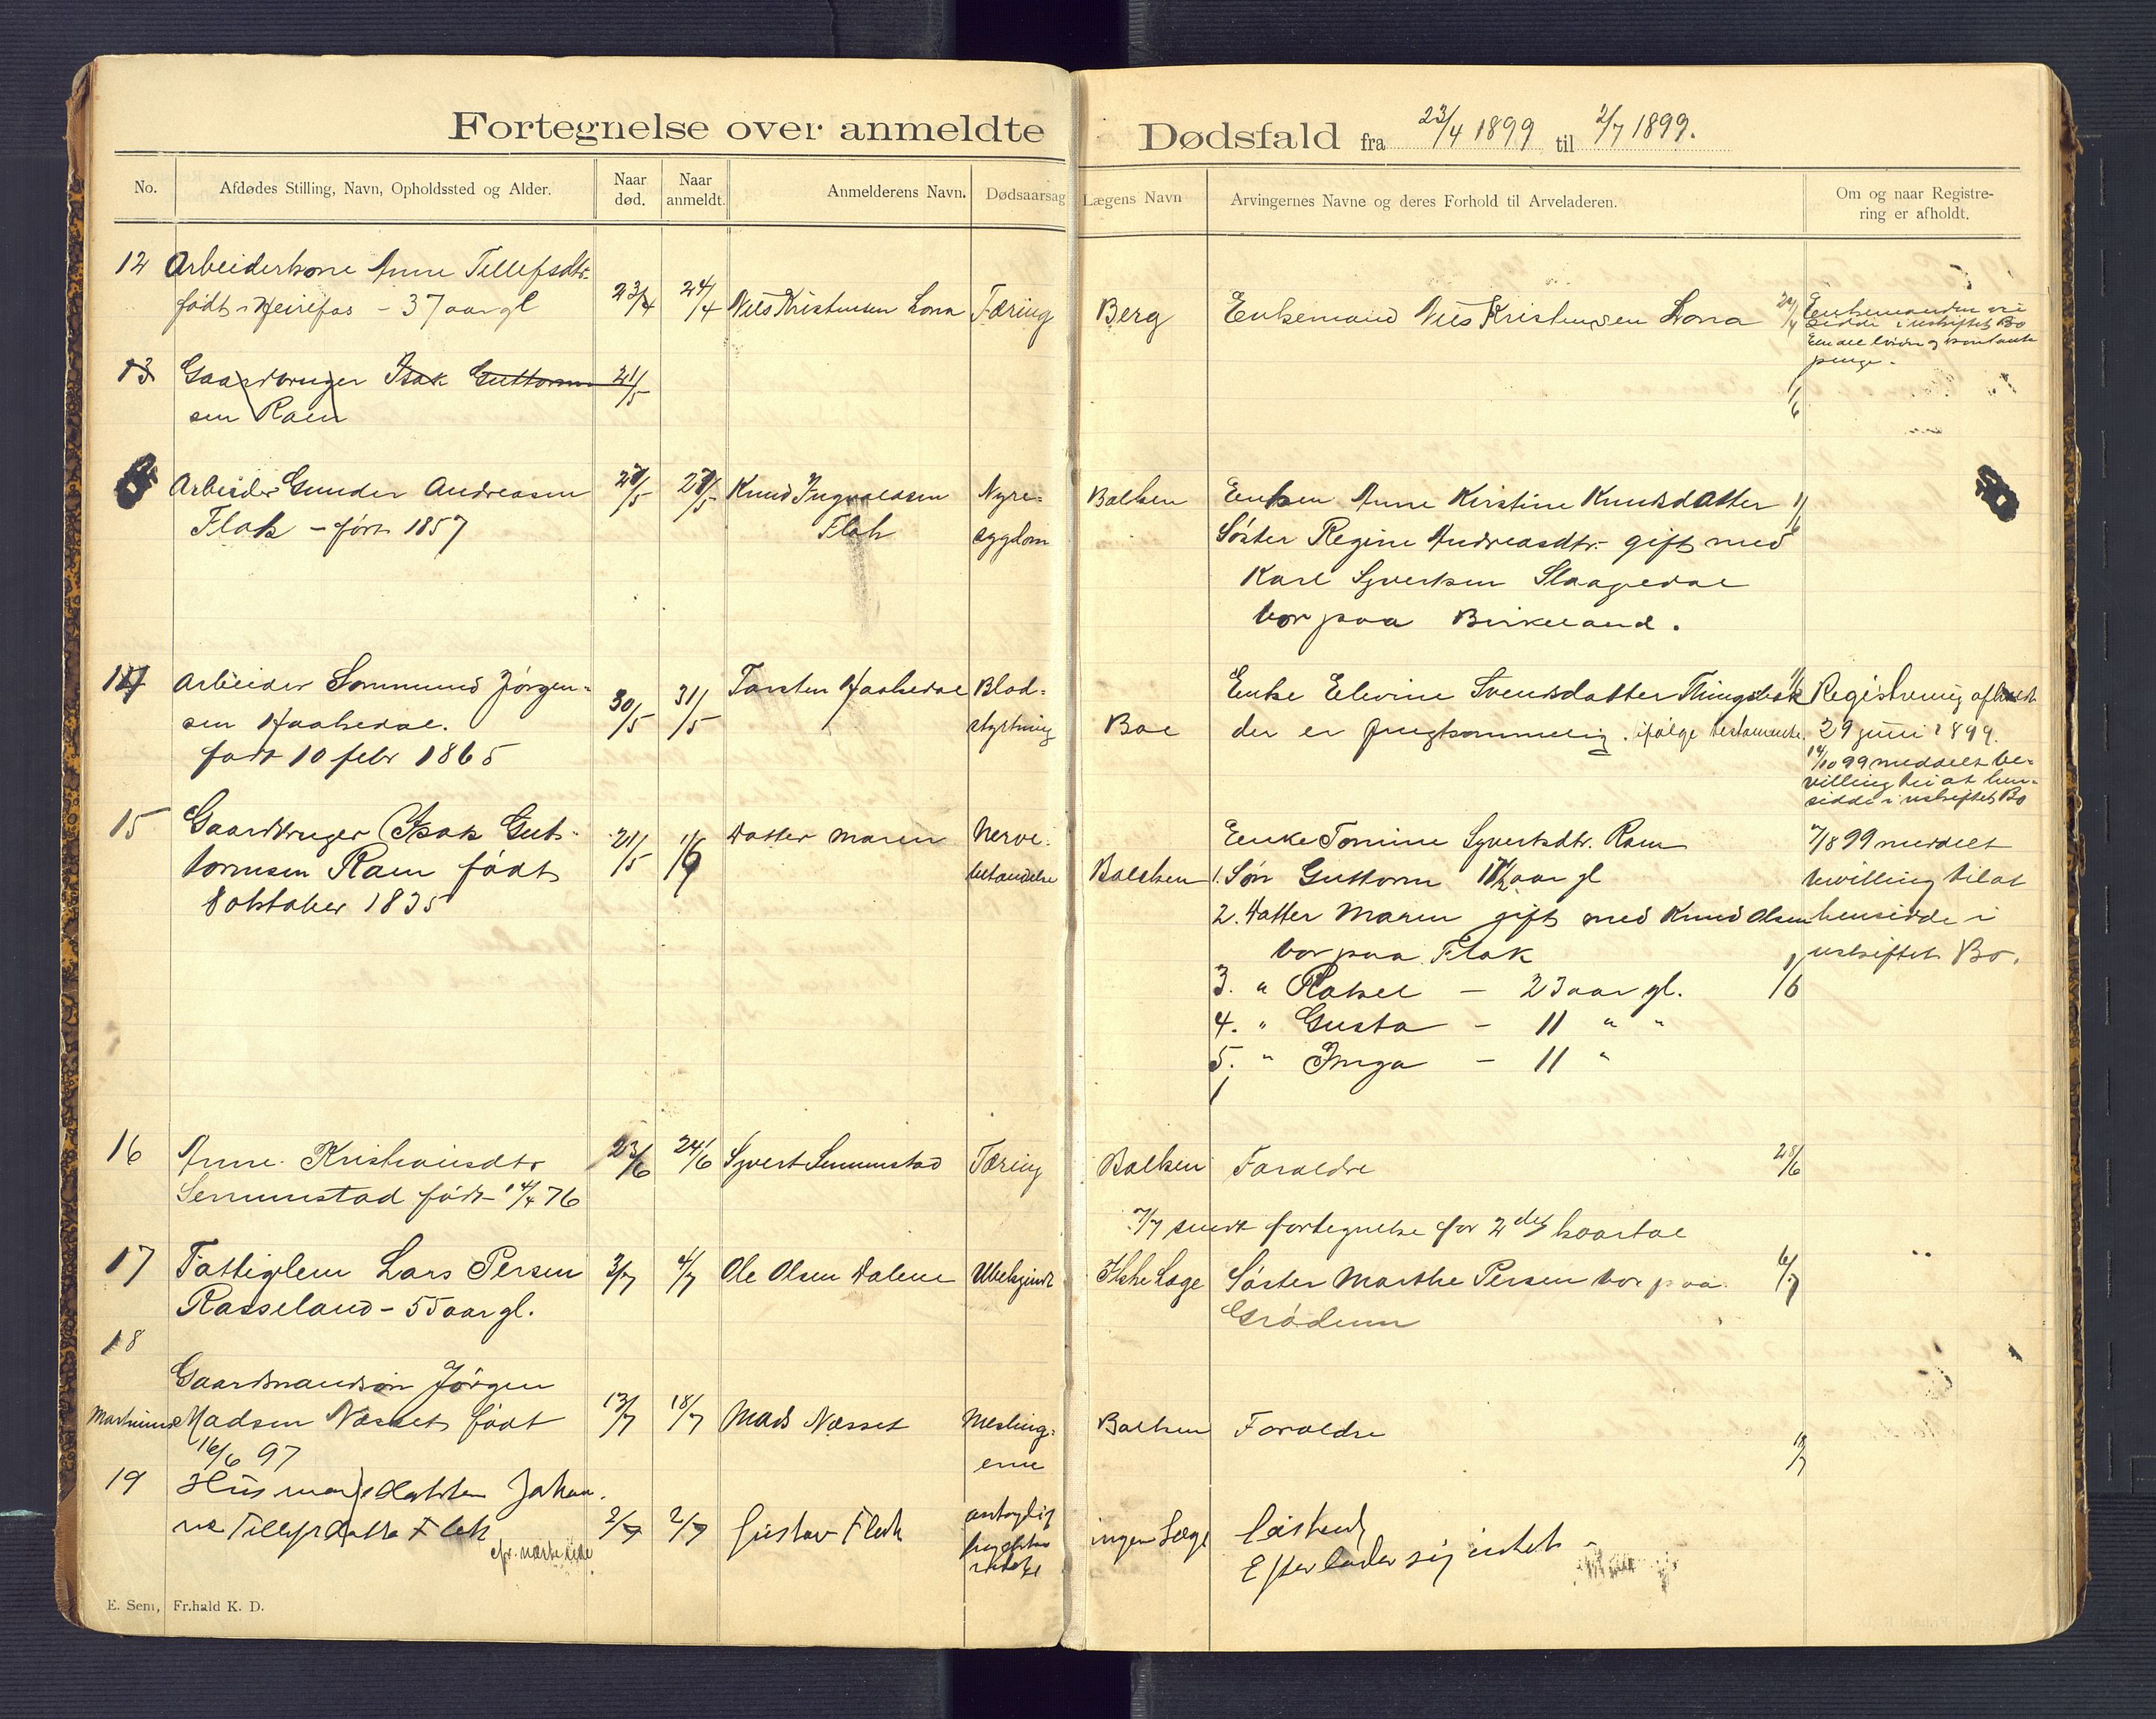 Birkenes lensmannskontor, SAK/1241-0004/F/Fe/L0001/0001: Dødsfallsprotokoller / Dødsfallsprotokoll, 1898-1920